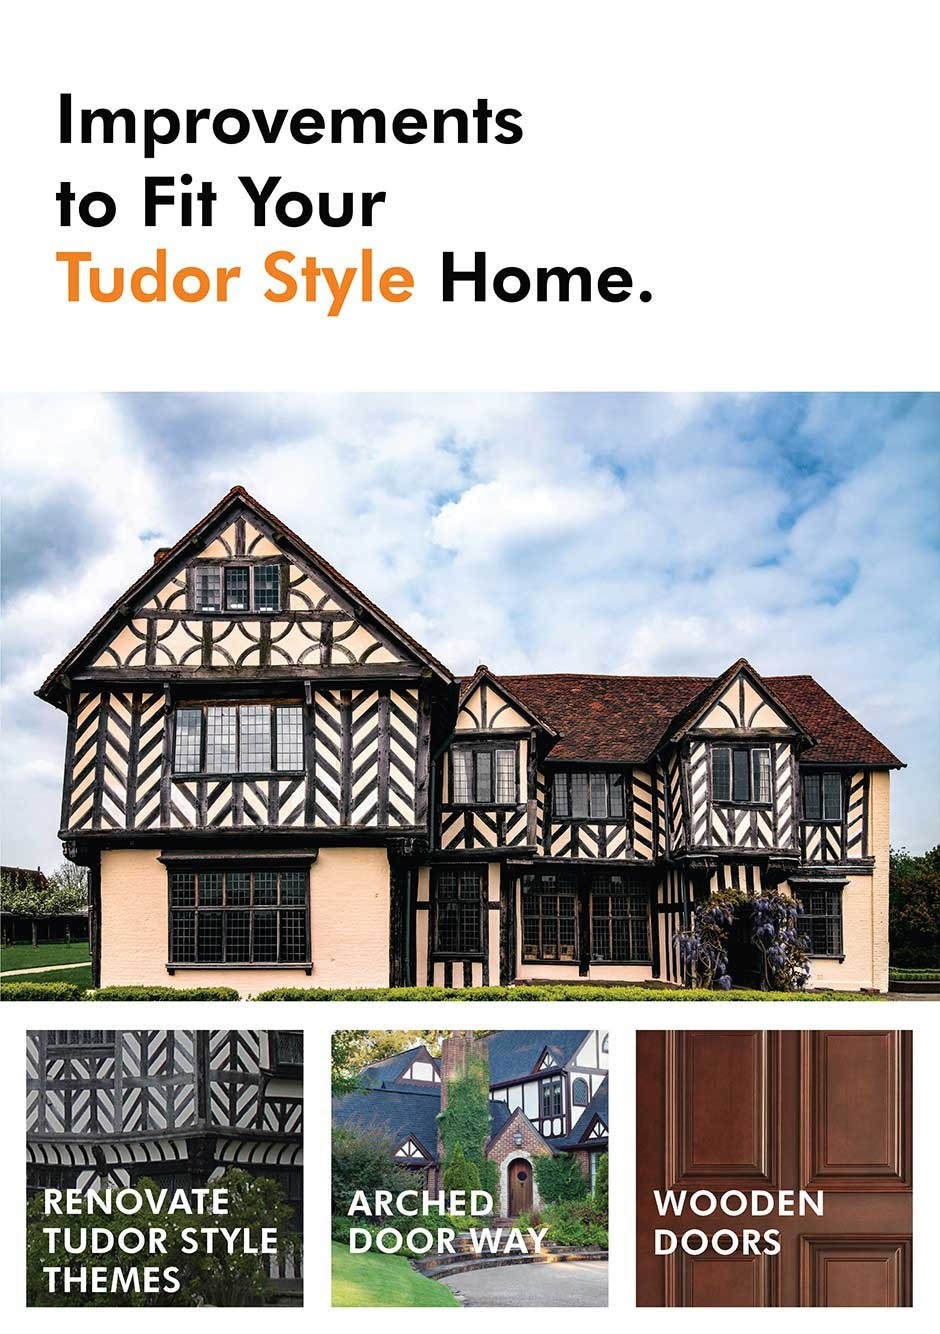 Improvement ideas for a tudor style home